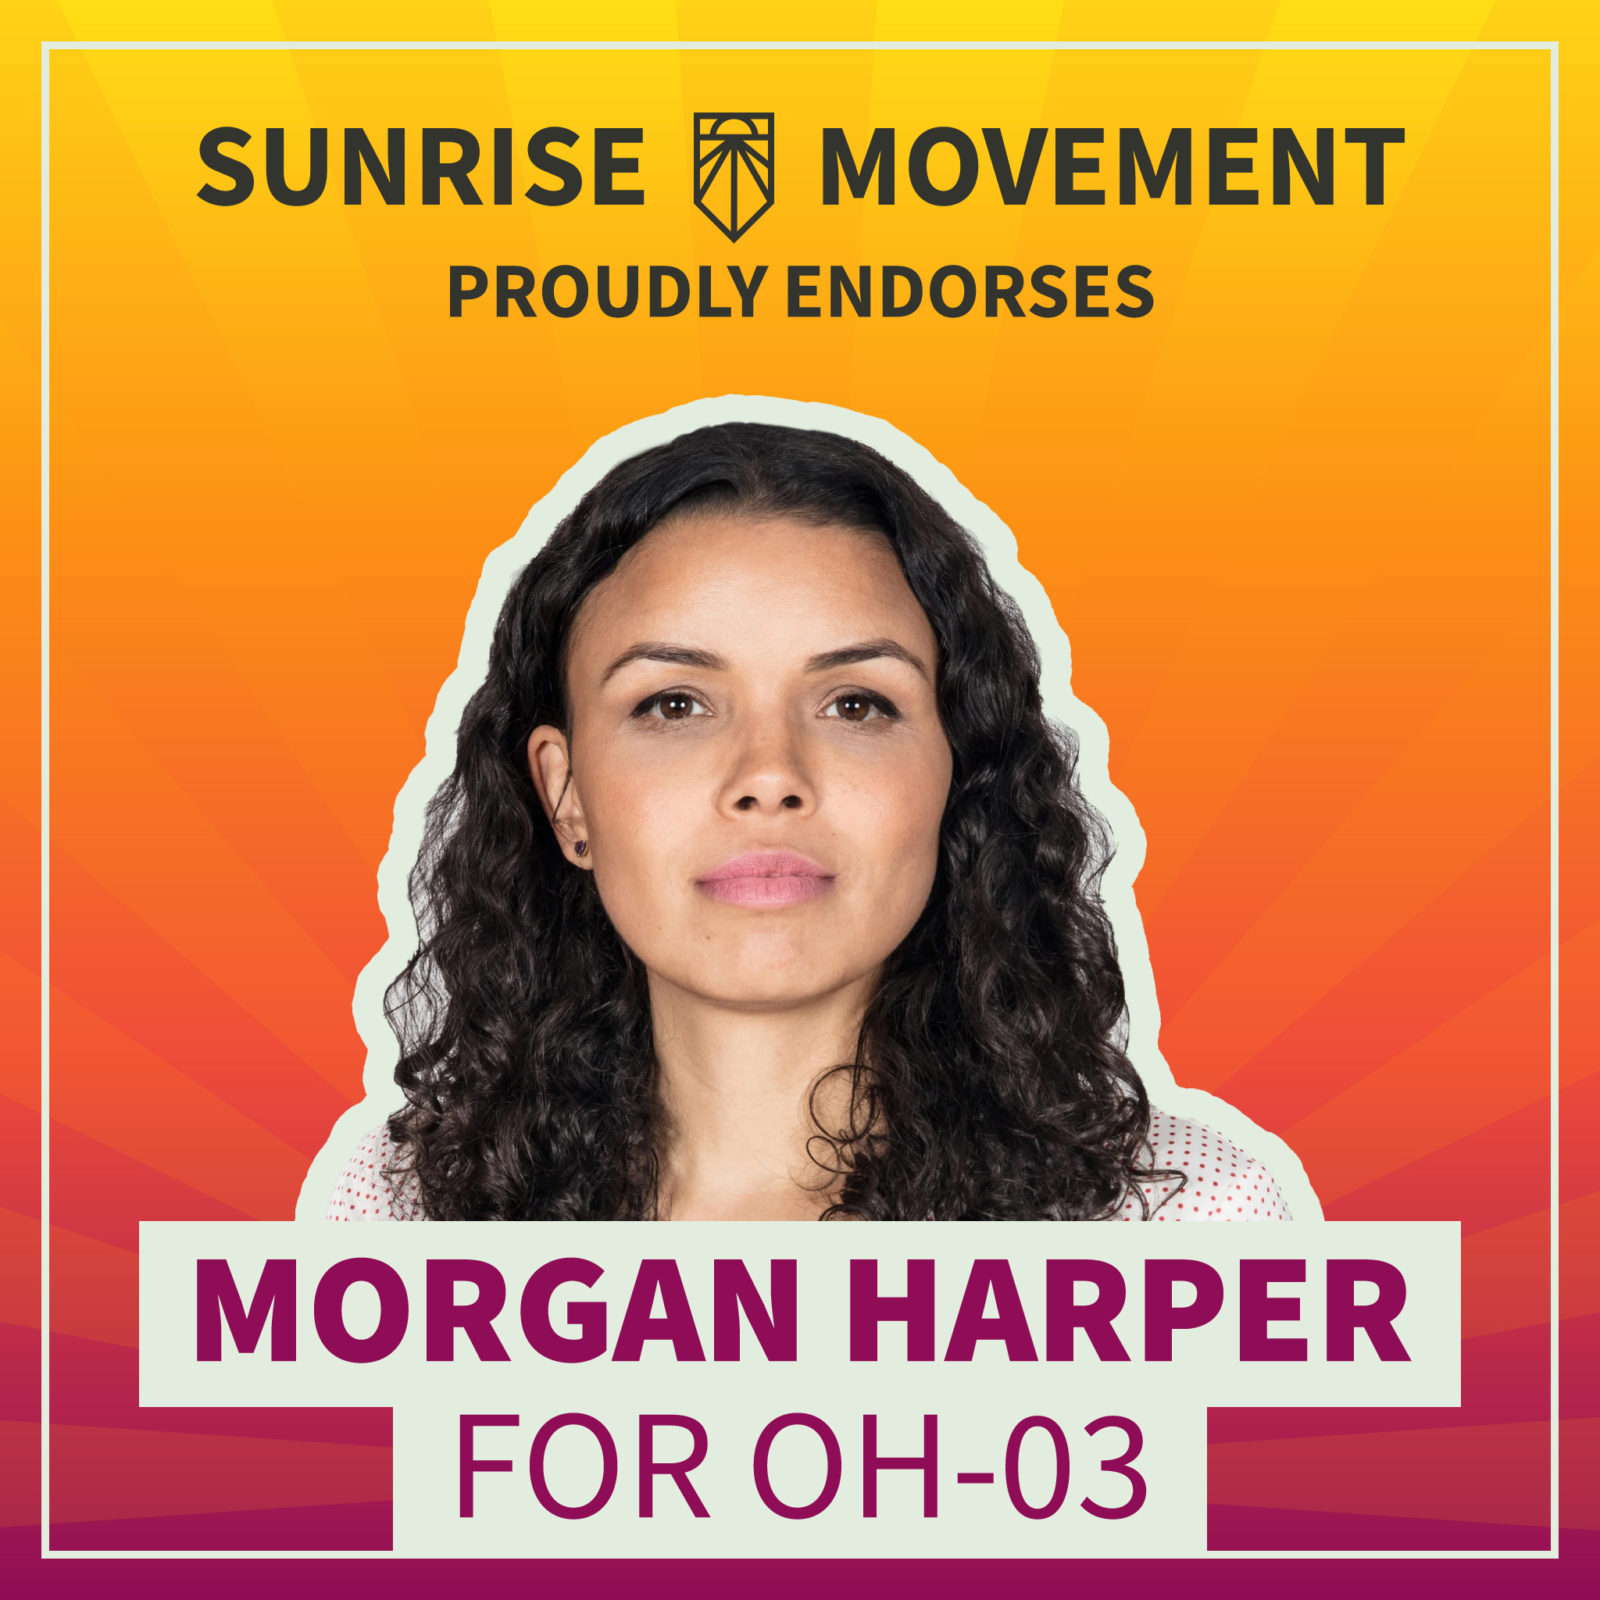 Una foto de Morgan Harper con texto: Sunrise Movement respalda con orgullo a Morgan Harper para OH-03